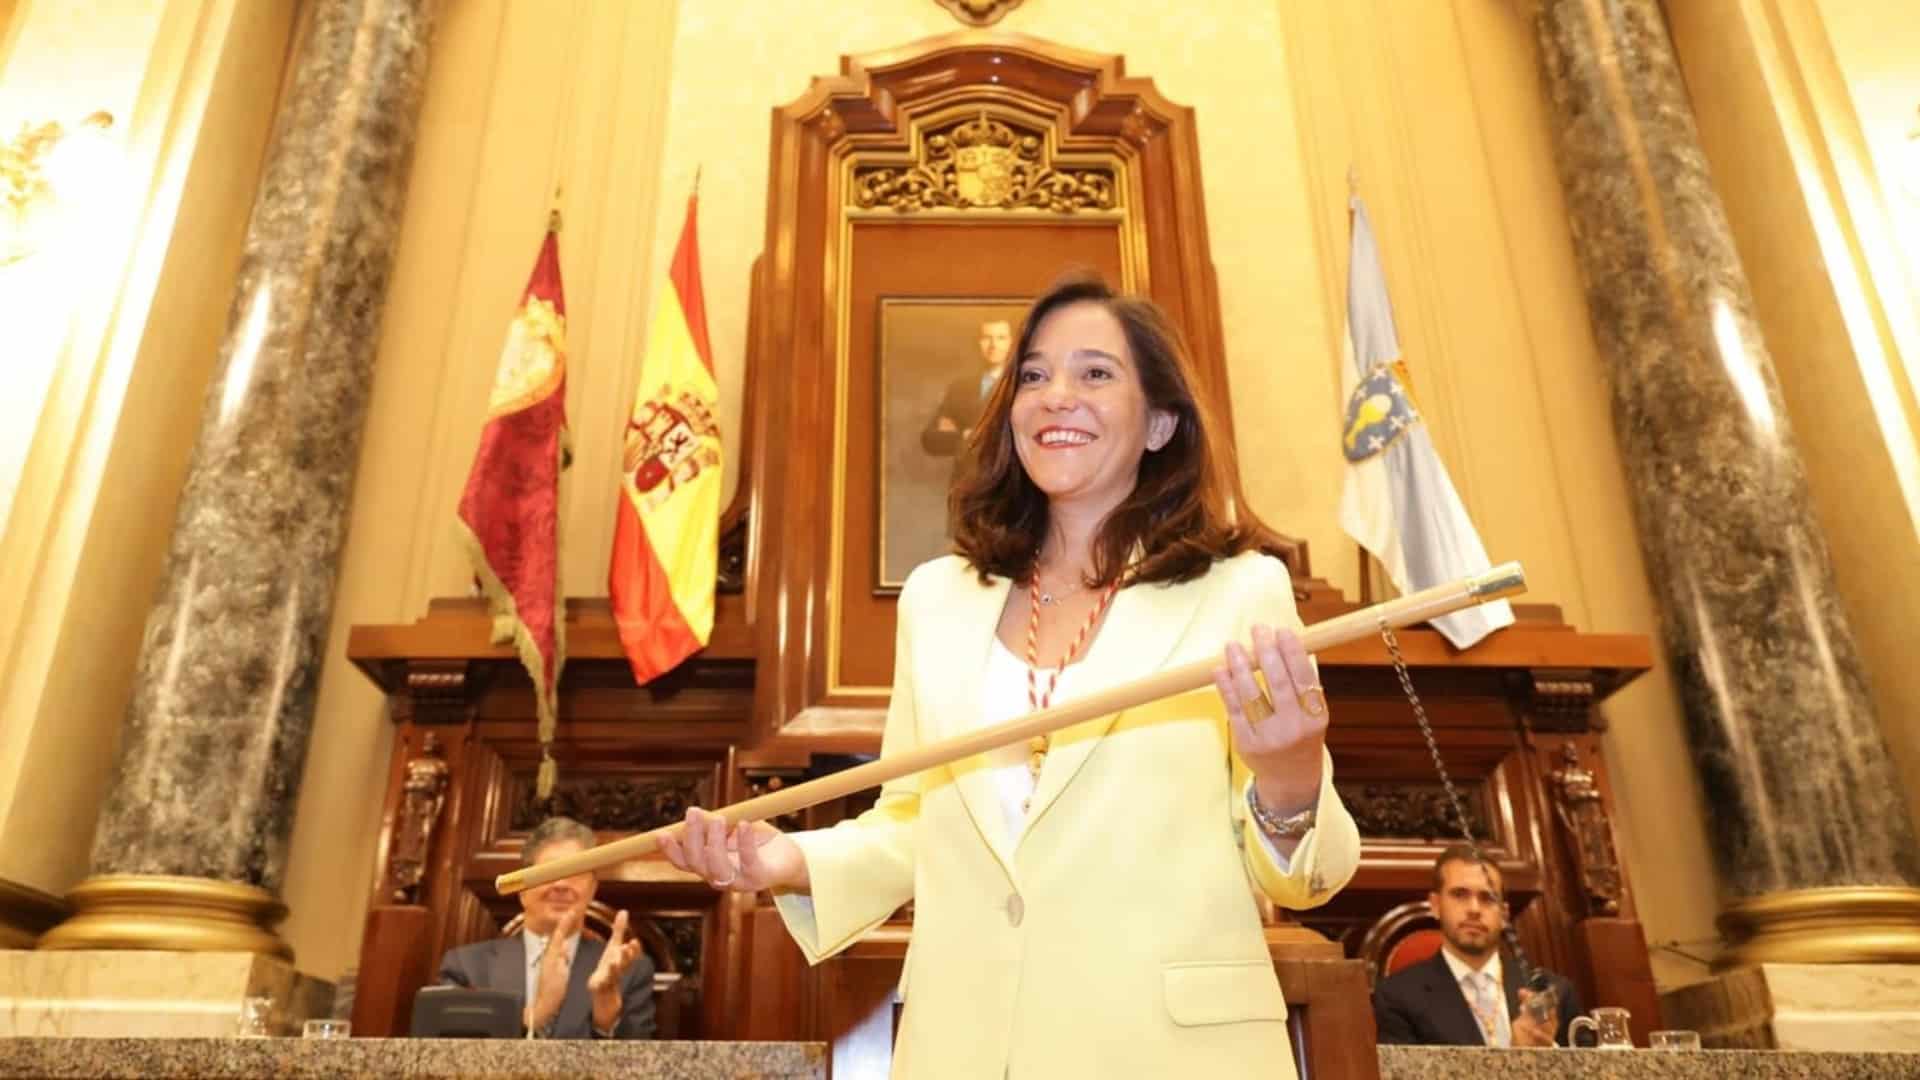 La alcaldesa de A Coruña, la socialista Inés Rey, en la toma de posesión de su segundo mandato | CONCELLO DA CORUÑA